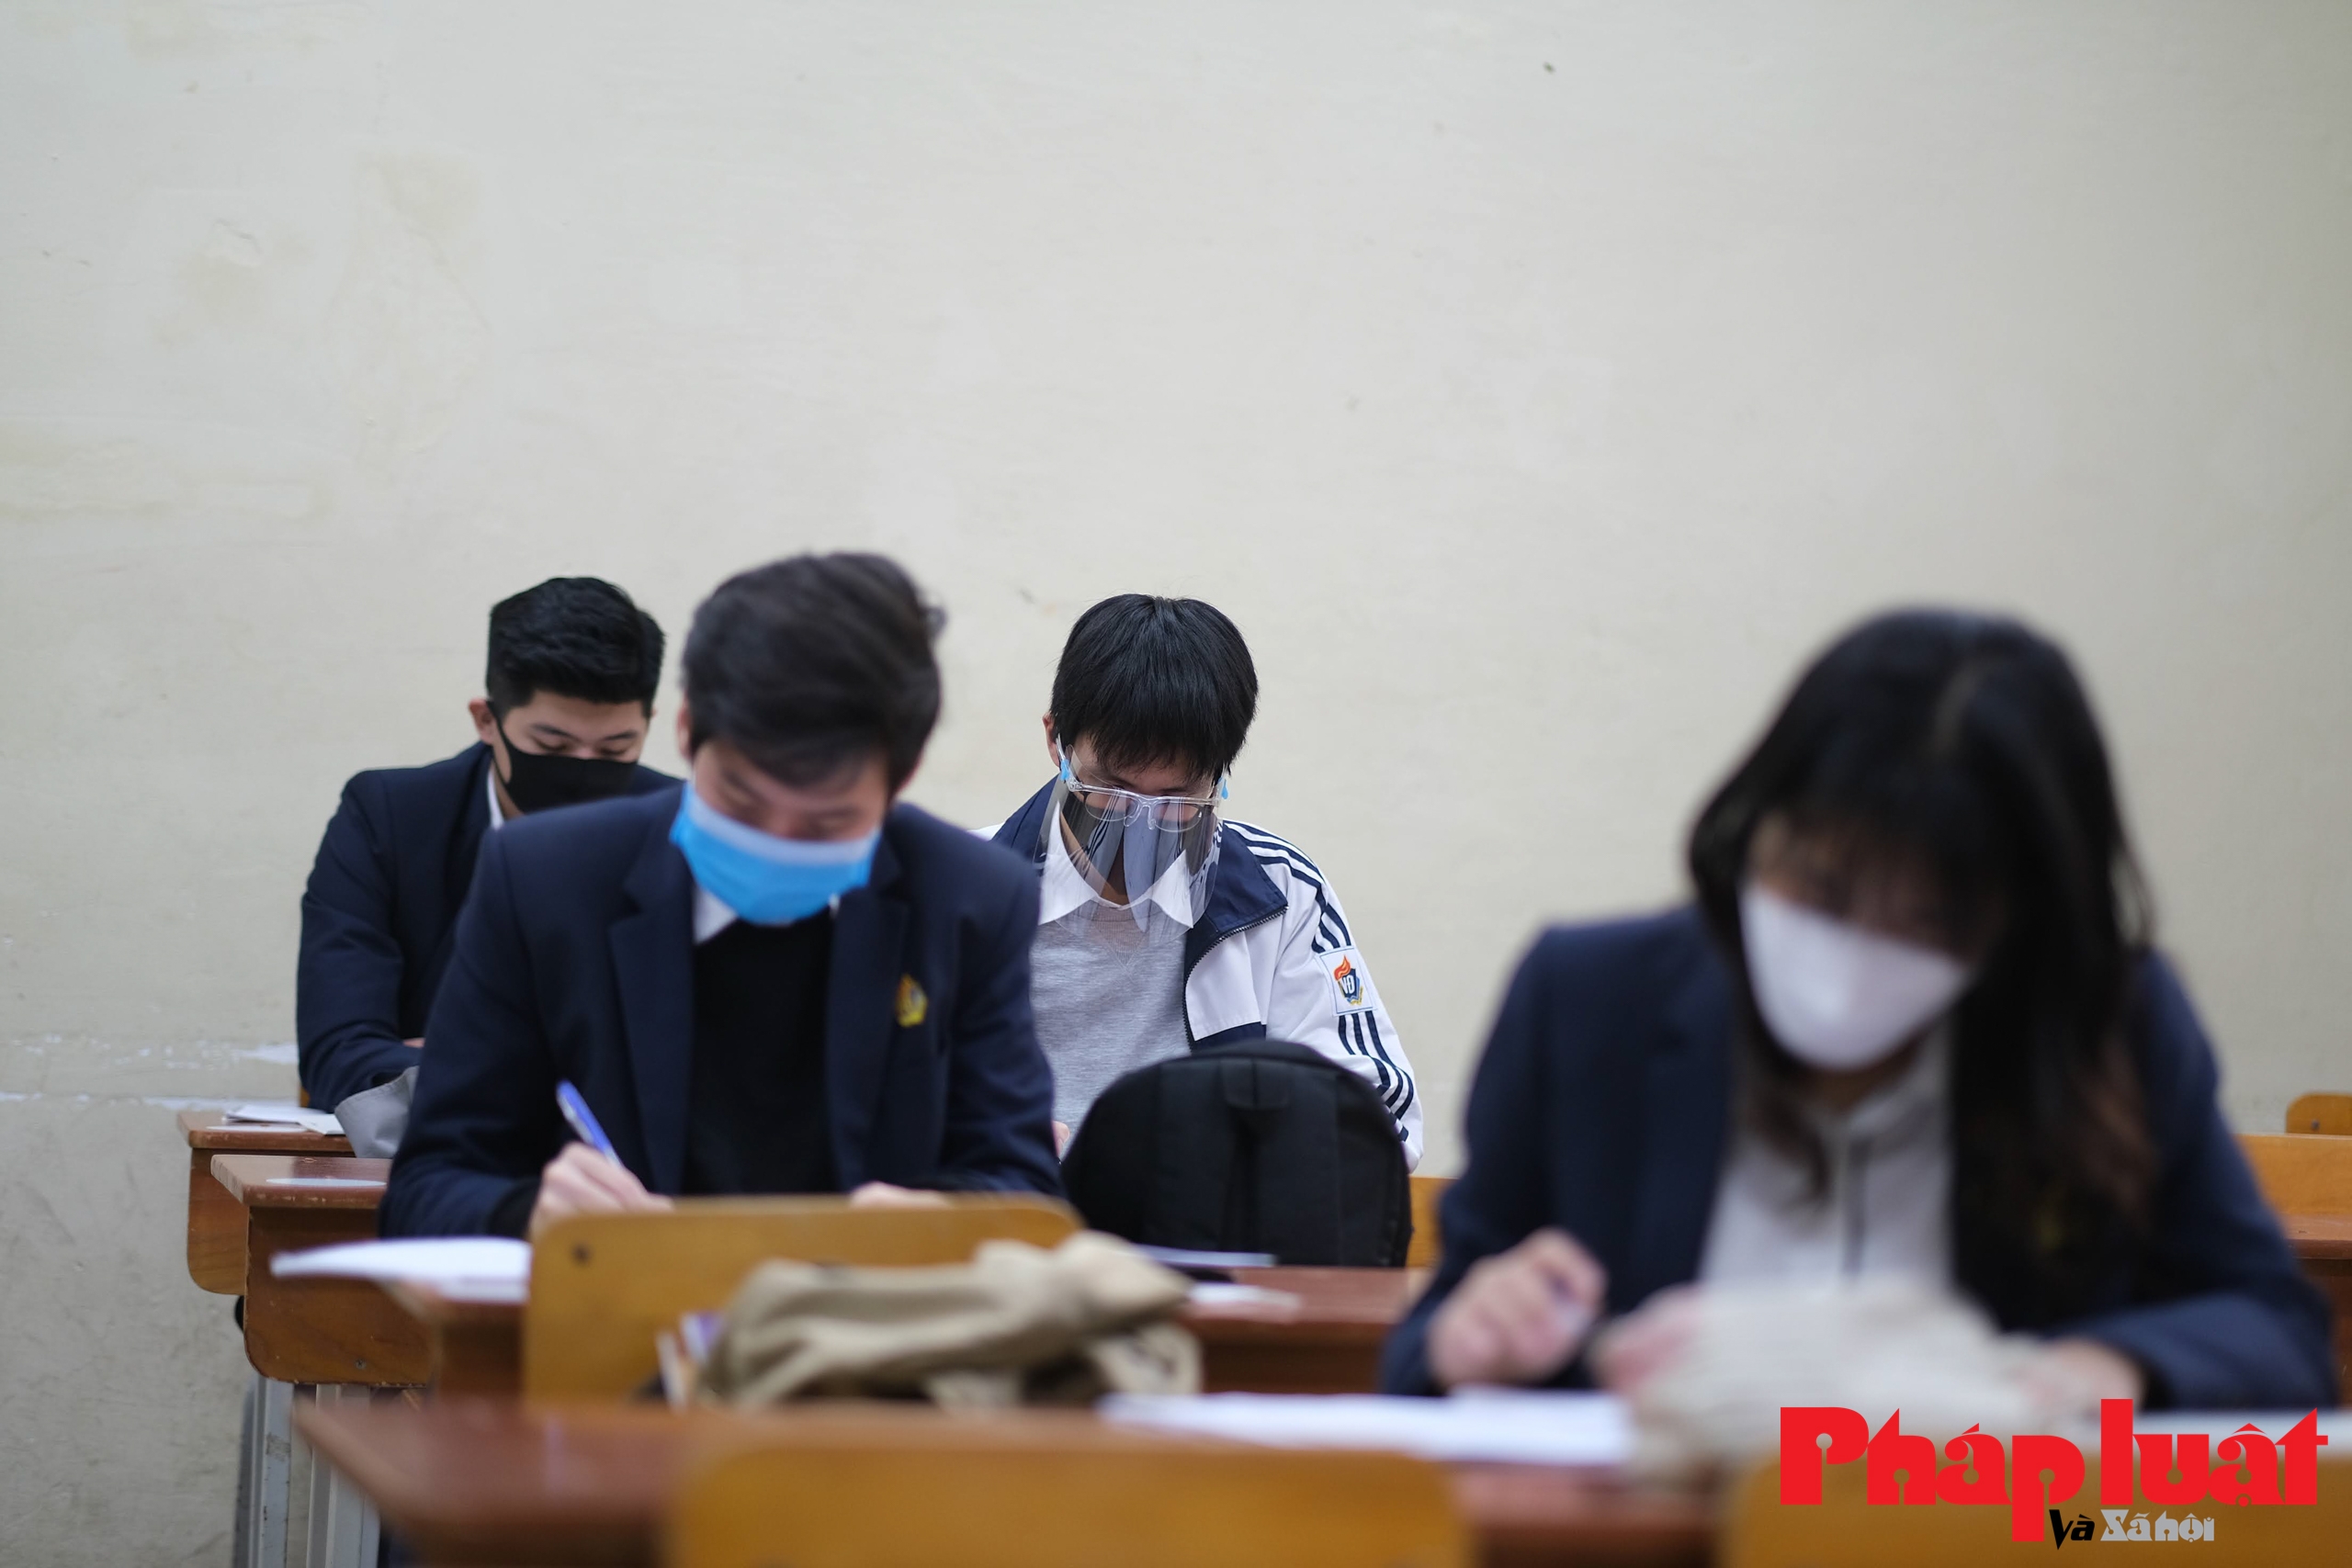 Học sinh lớp 12 tại Hà Nội bắt đầu đi học trở lại sau nhiều tháng nghỉ dịch